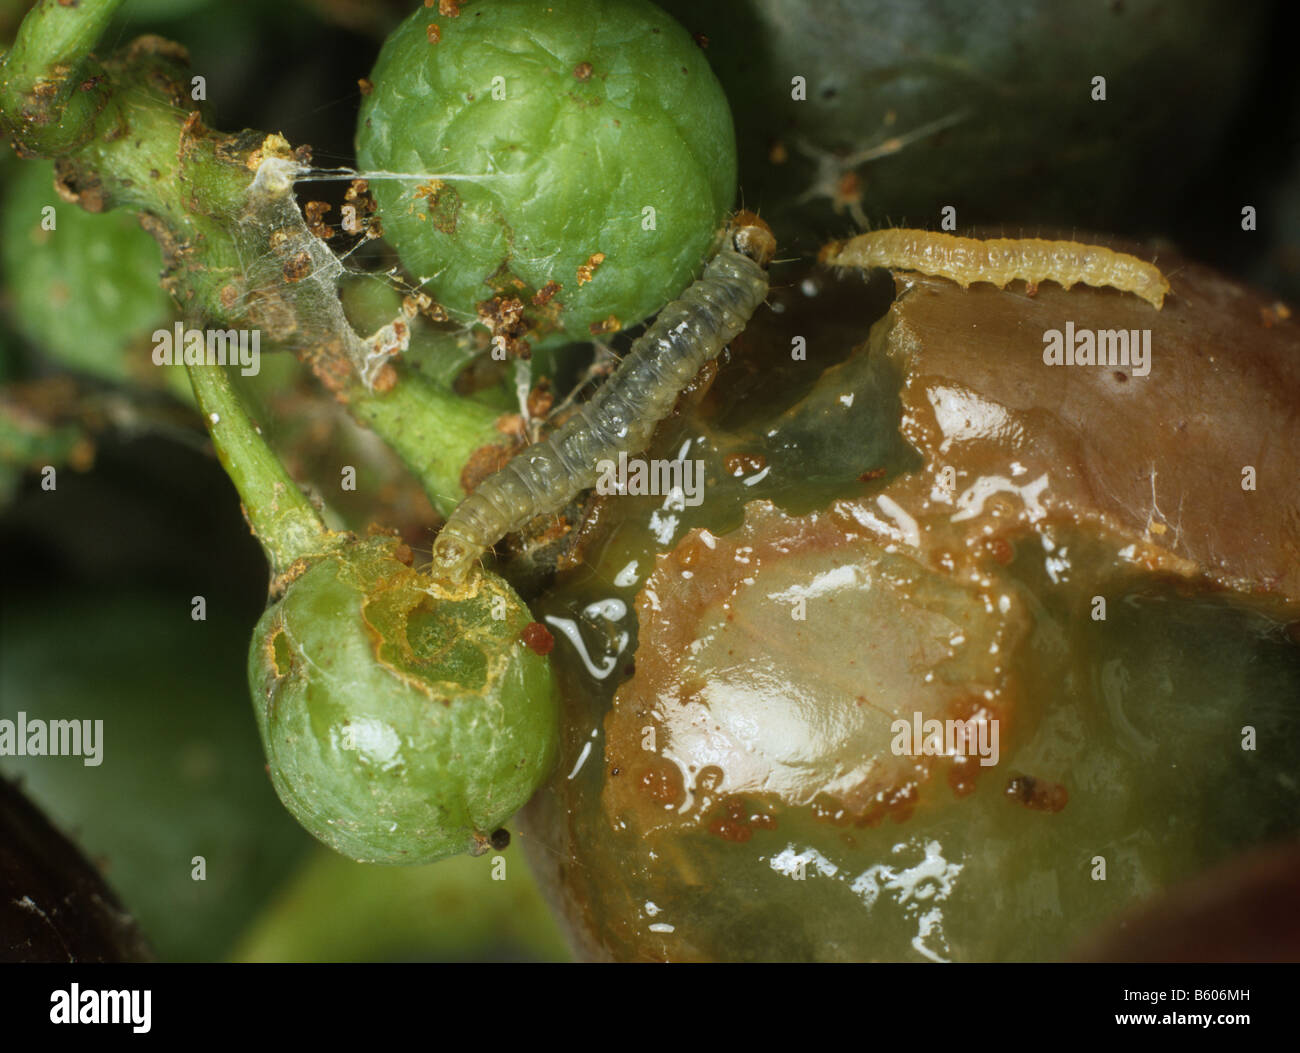 Unione tignole della vite Lobesia botrana bruchi su uva danneggiata Foto Stock